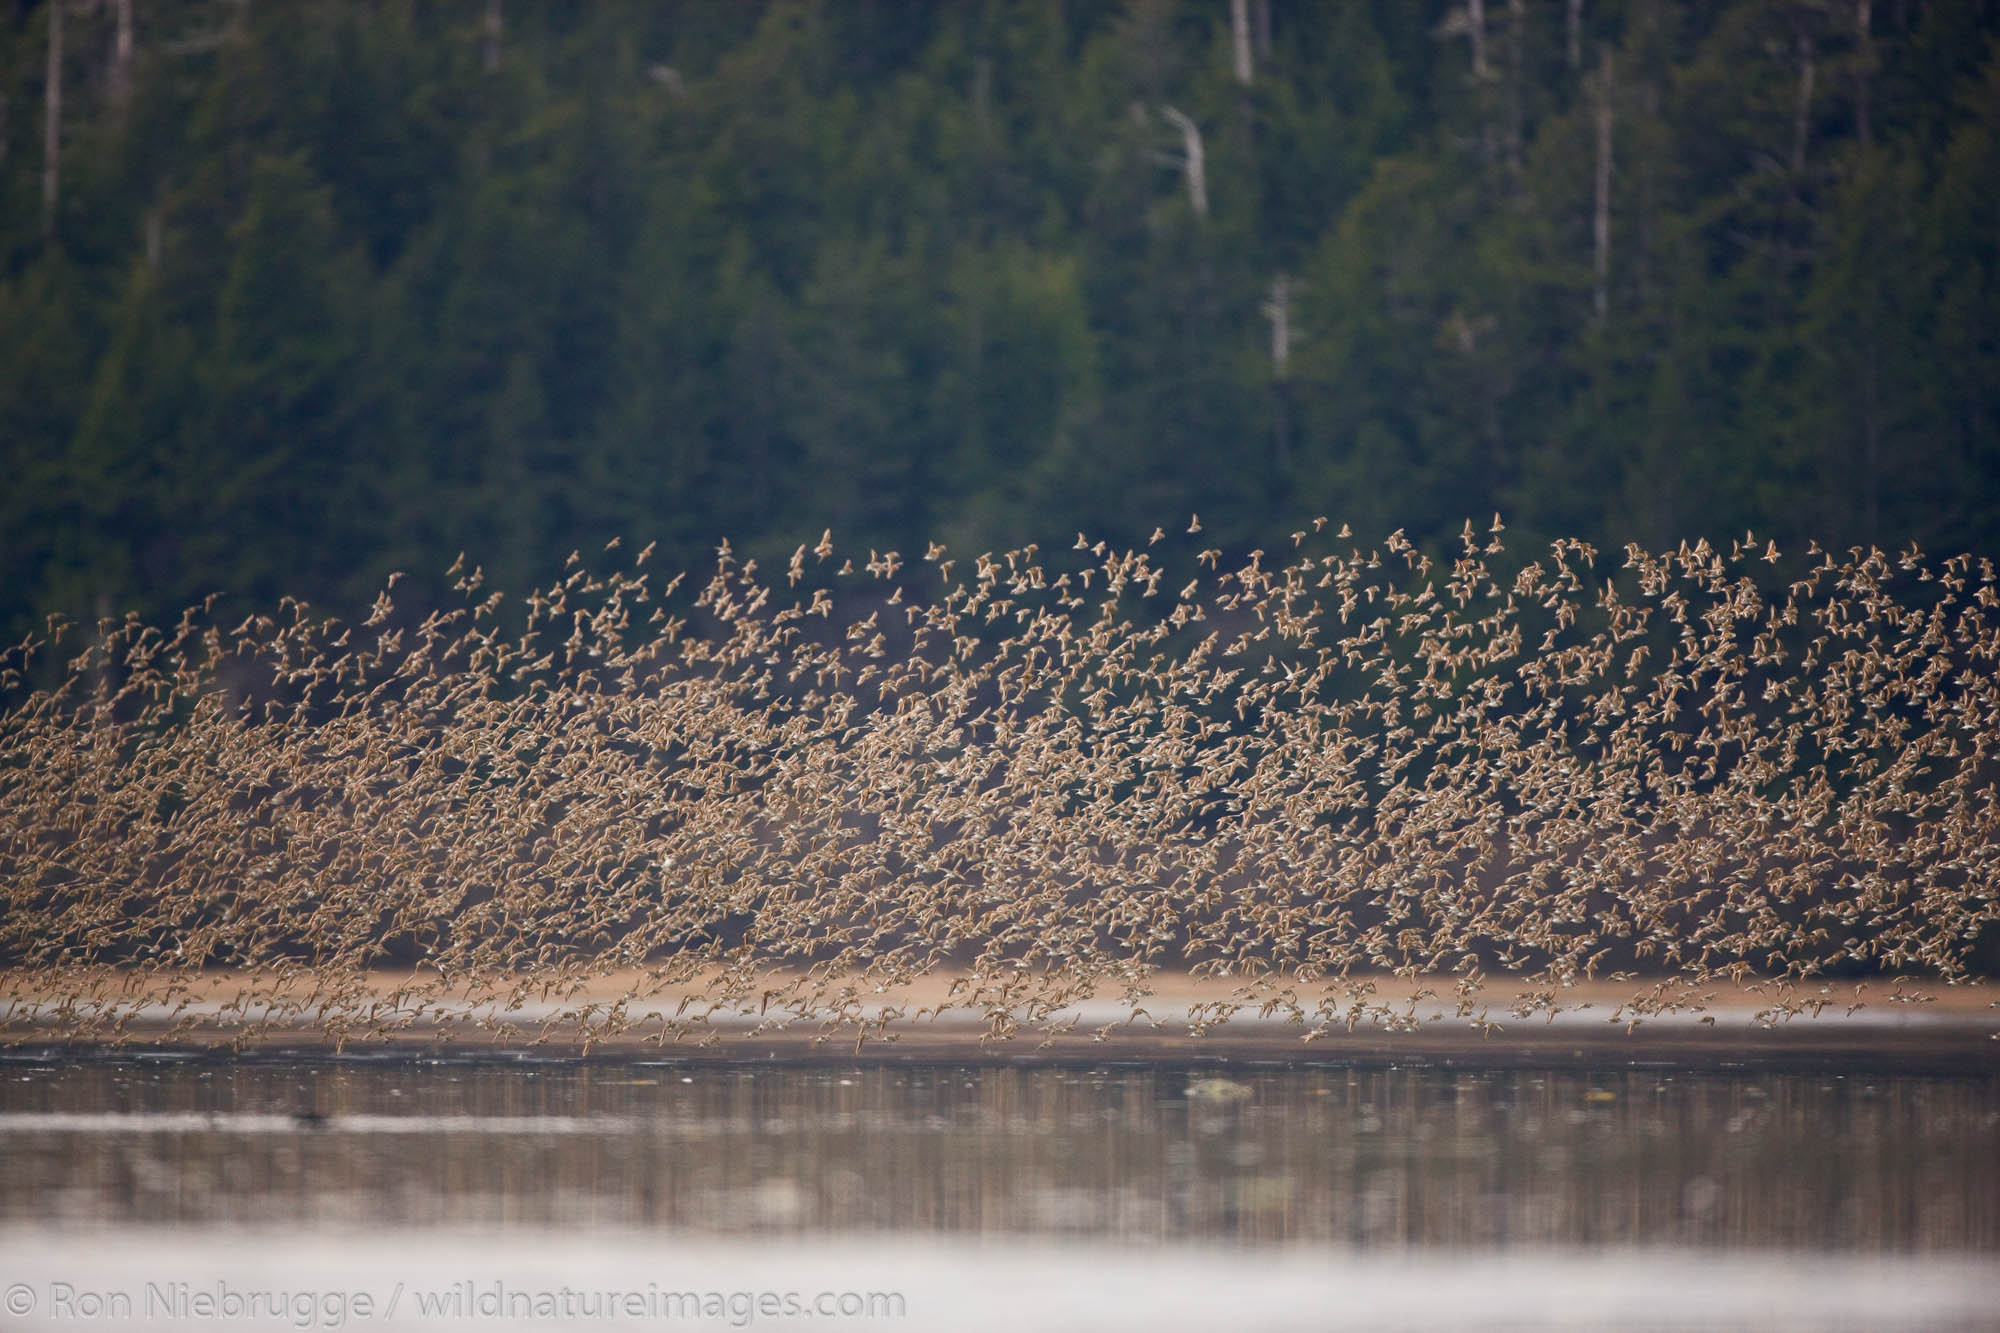 Shorebird migration, primarily Western Sandpipers, Copper River Delta, near Cordova, Alaska.